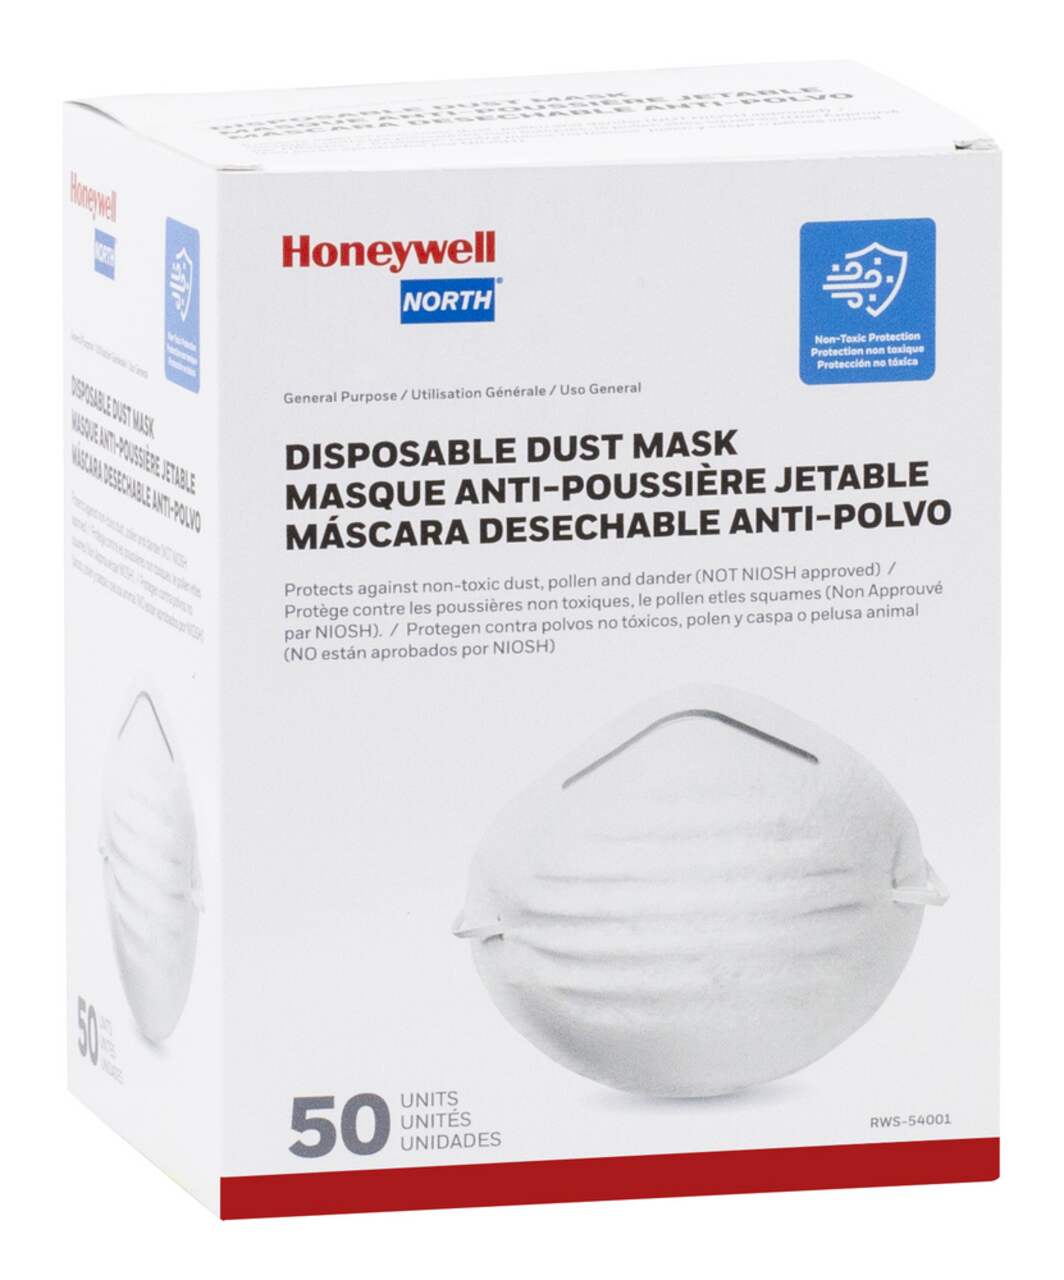 Masque anti-poussière réutilisable HONYAO